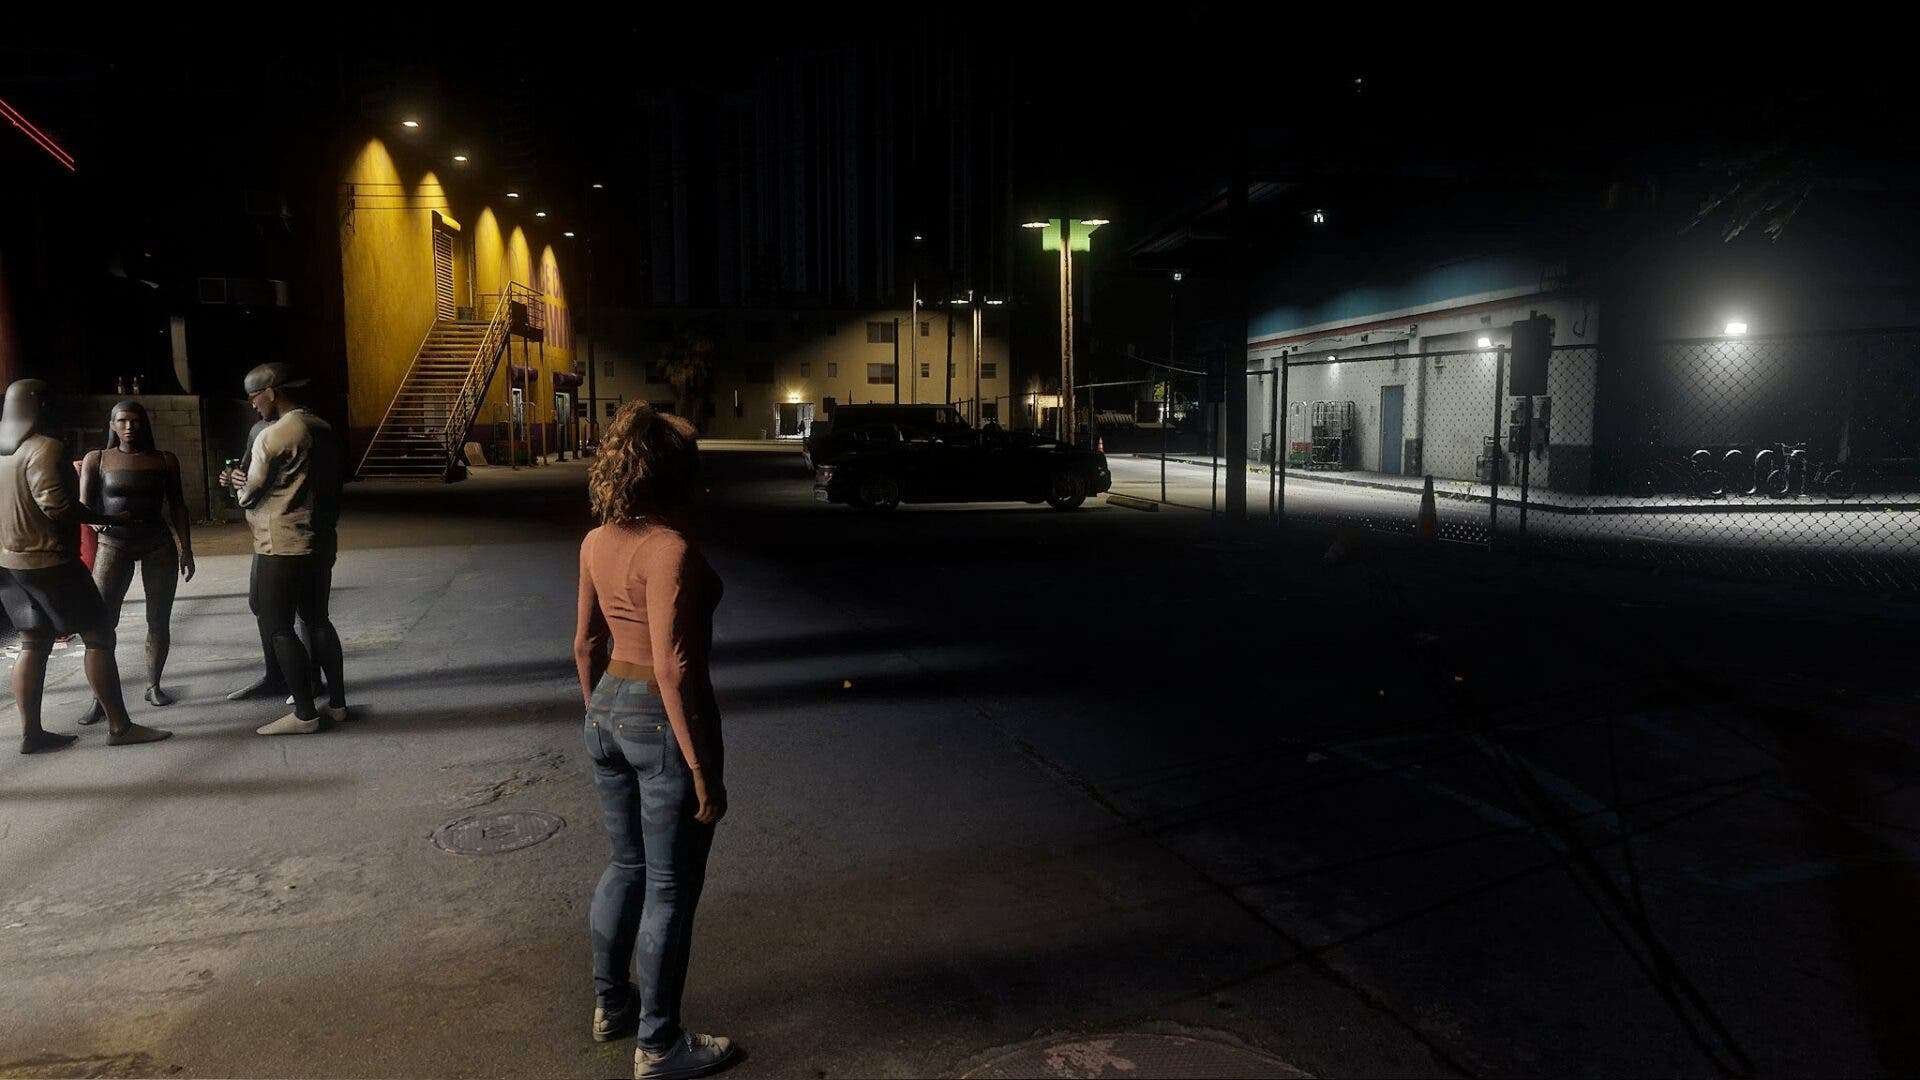 GTA 6: Imagens e vídeos vazados revelam protagonista mulher